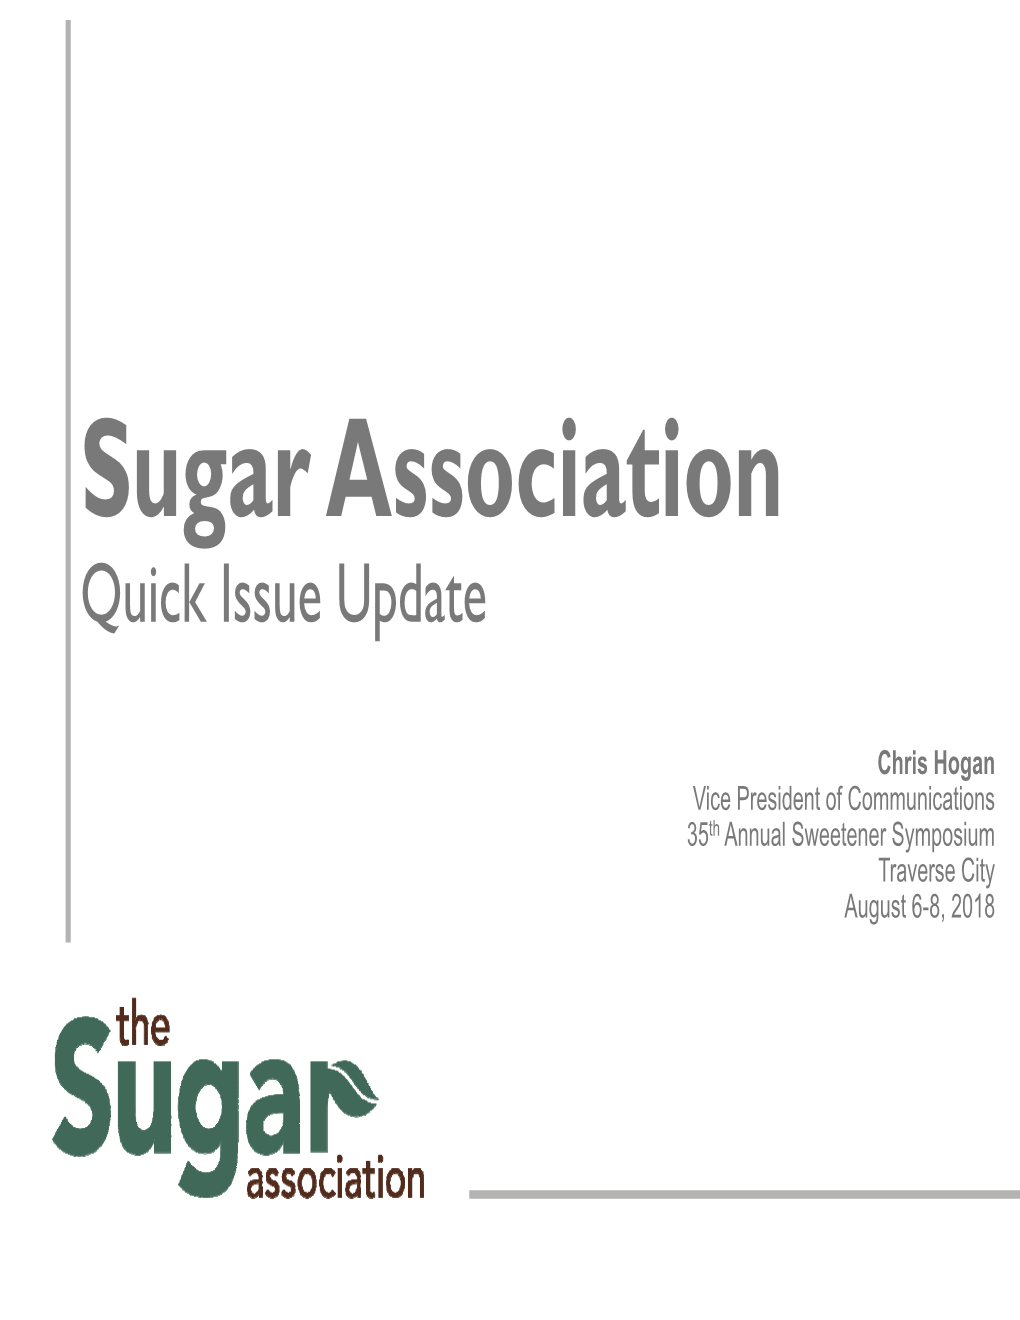 Sugar Association Quick Issue Update